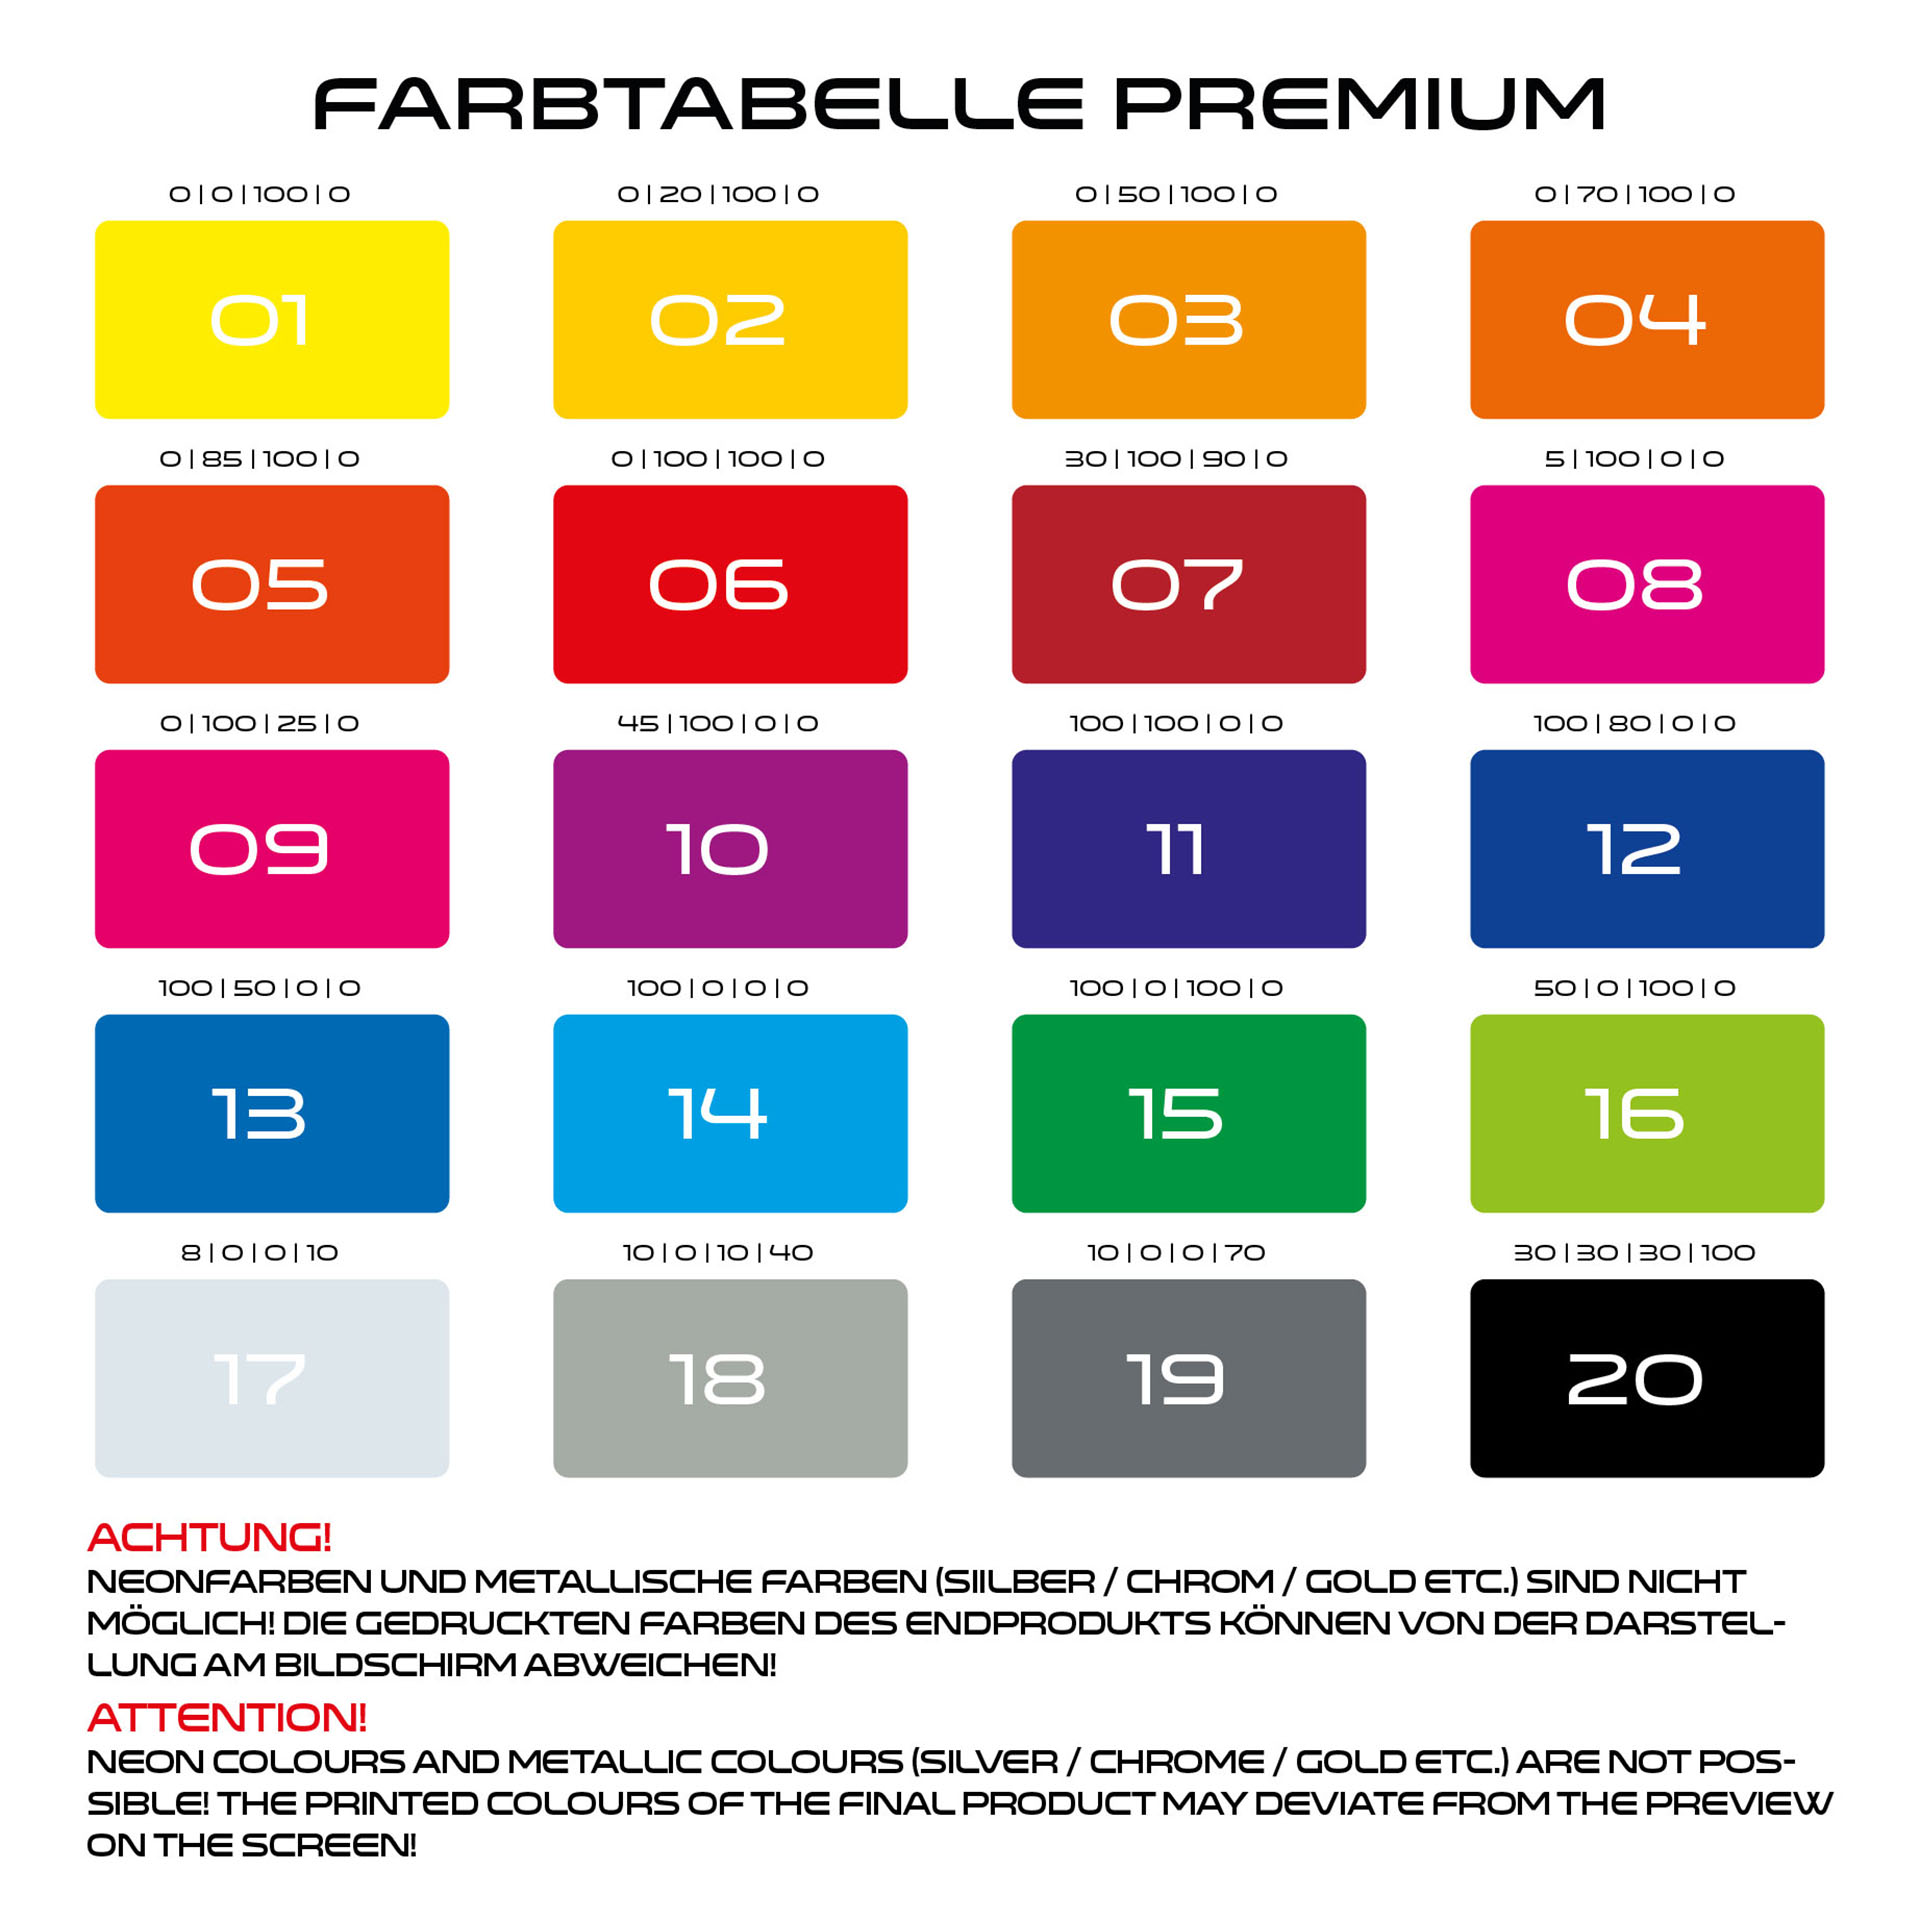 Cafe Racer V1 Felgenaufkleber Premium Farbtabelle Premium Wheelsticker